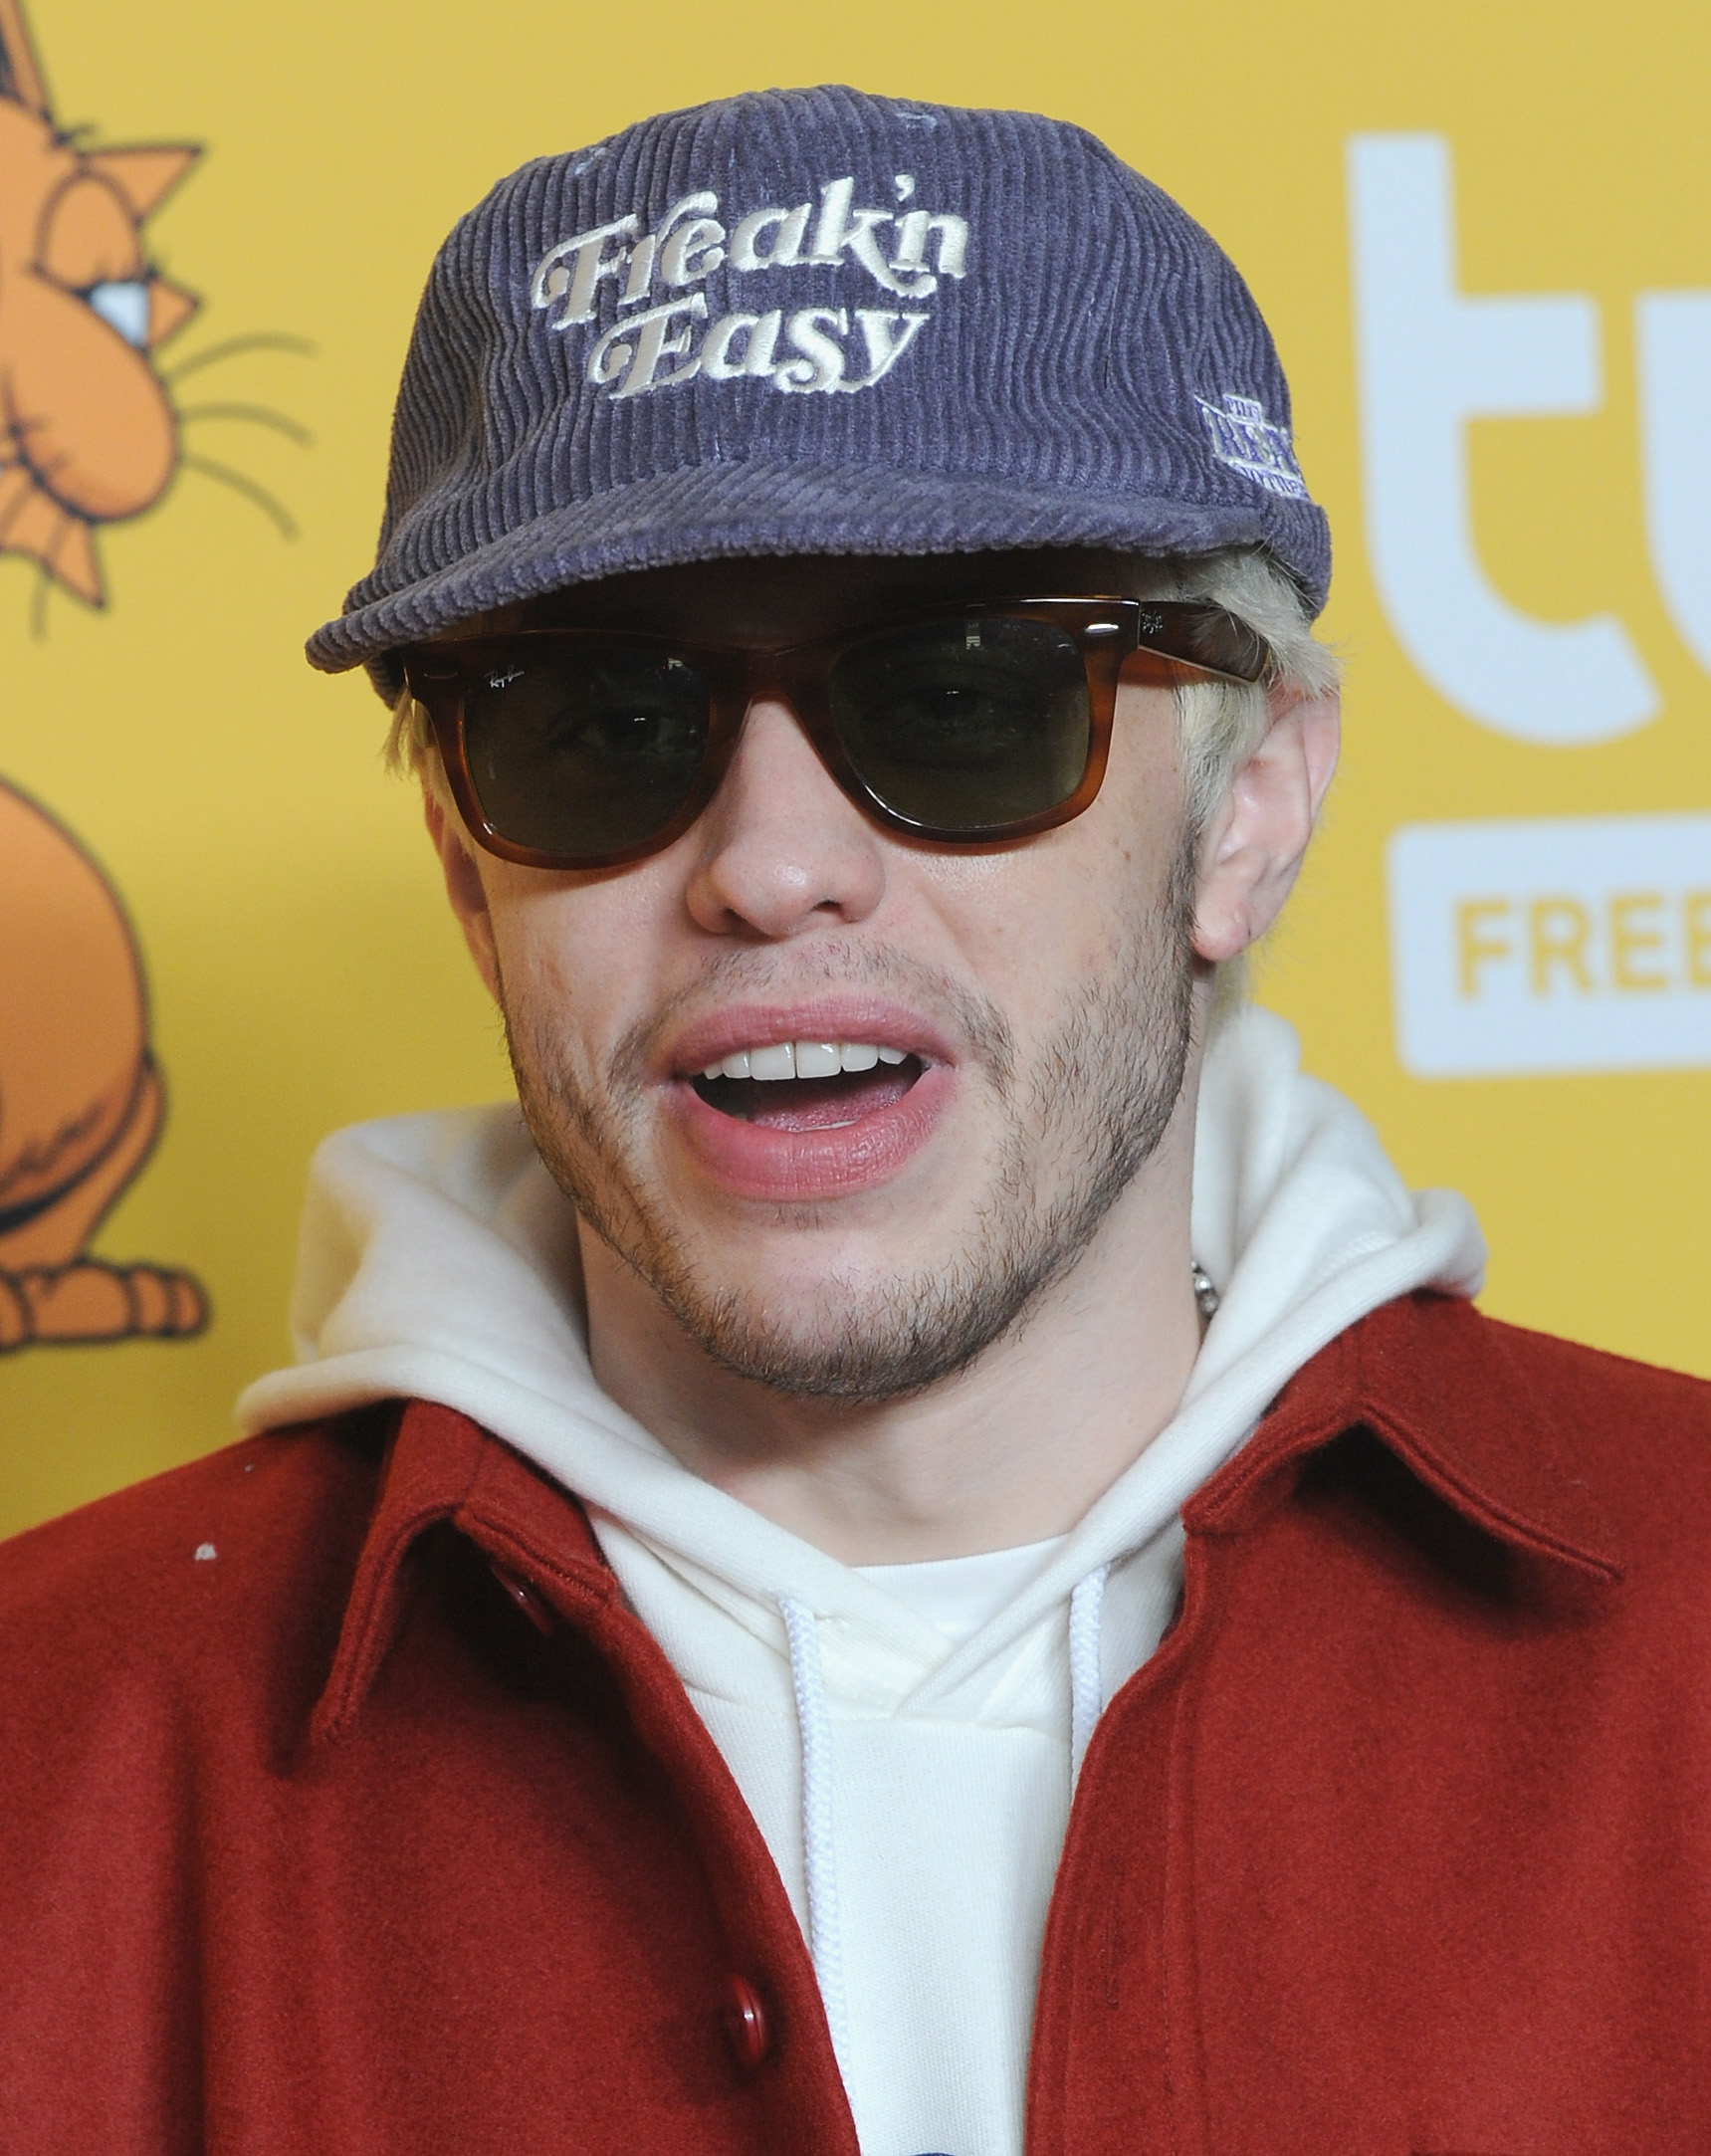 closeup of him in a cap and sunglasses